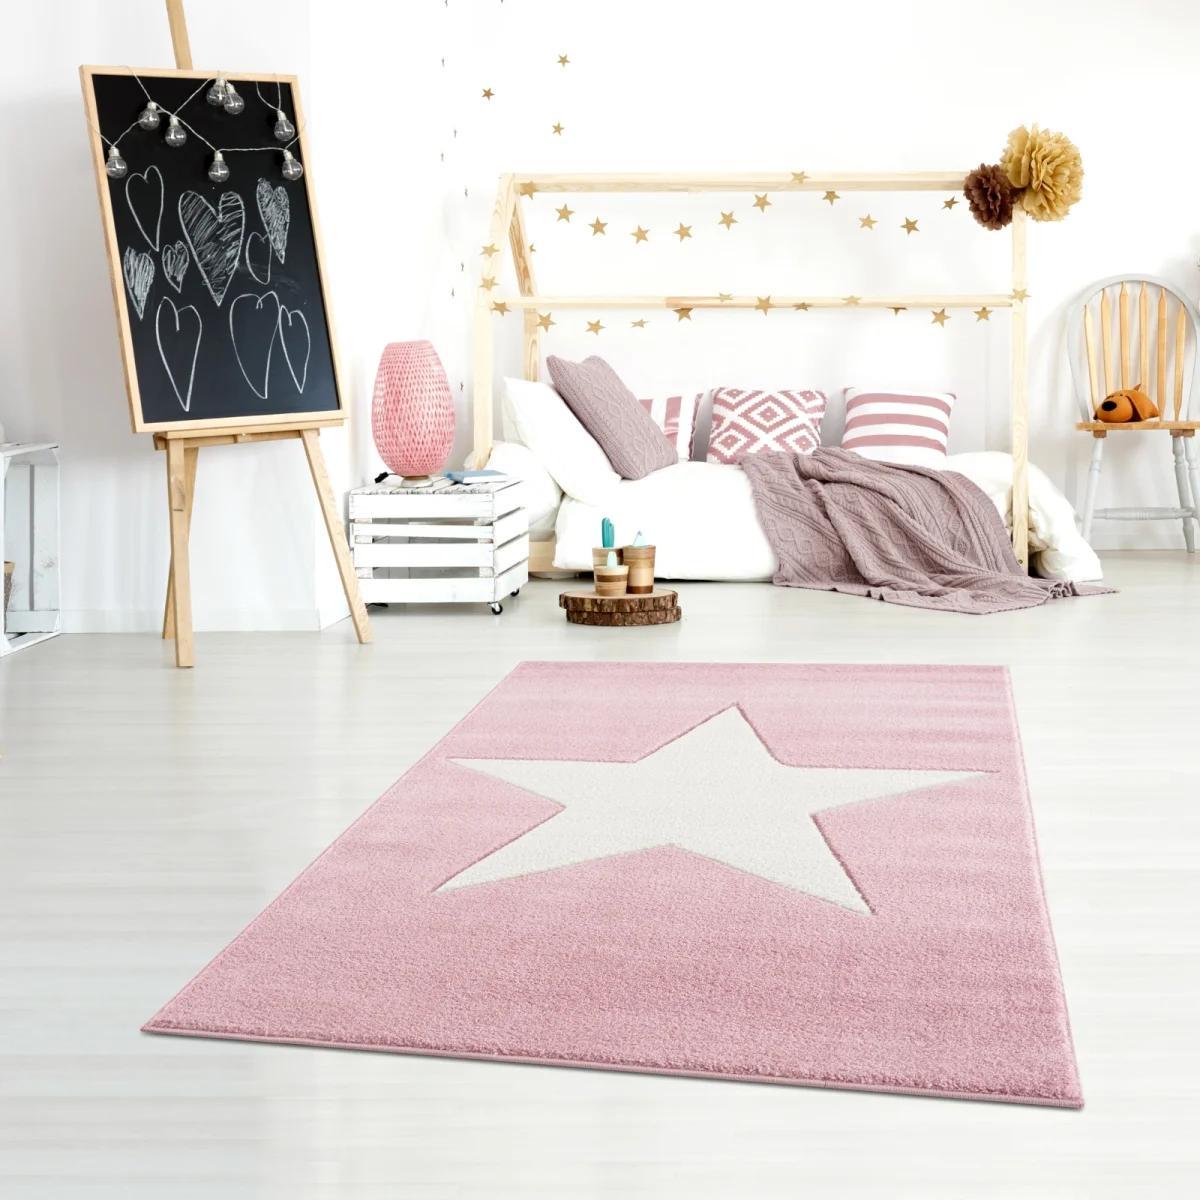 Dywan dziecięcy Big Star Round Pink 120x180 cm do pokoju dziecięcego różowy z gwiazdą nr. 1